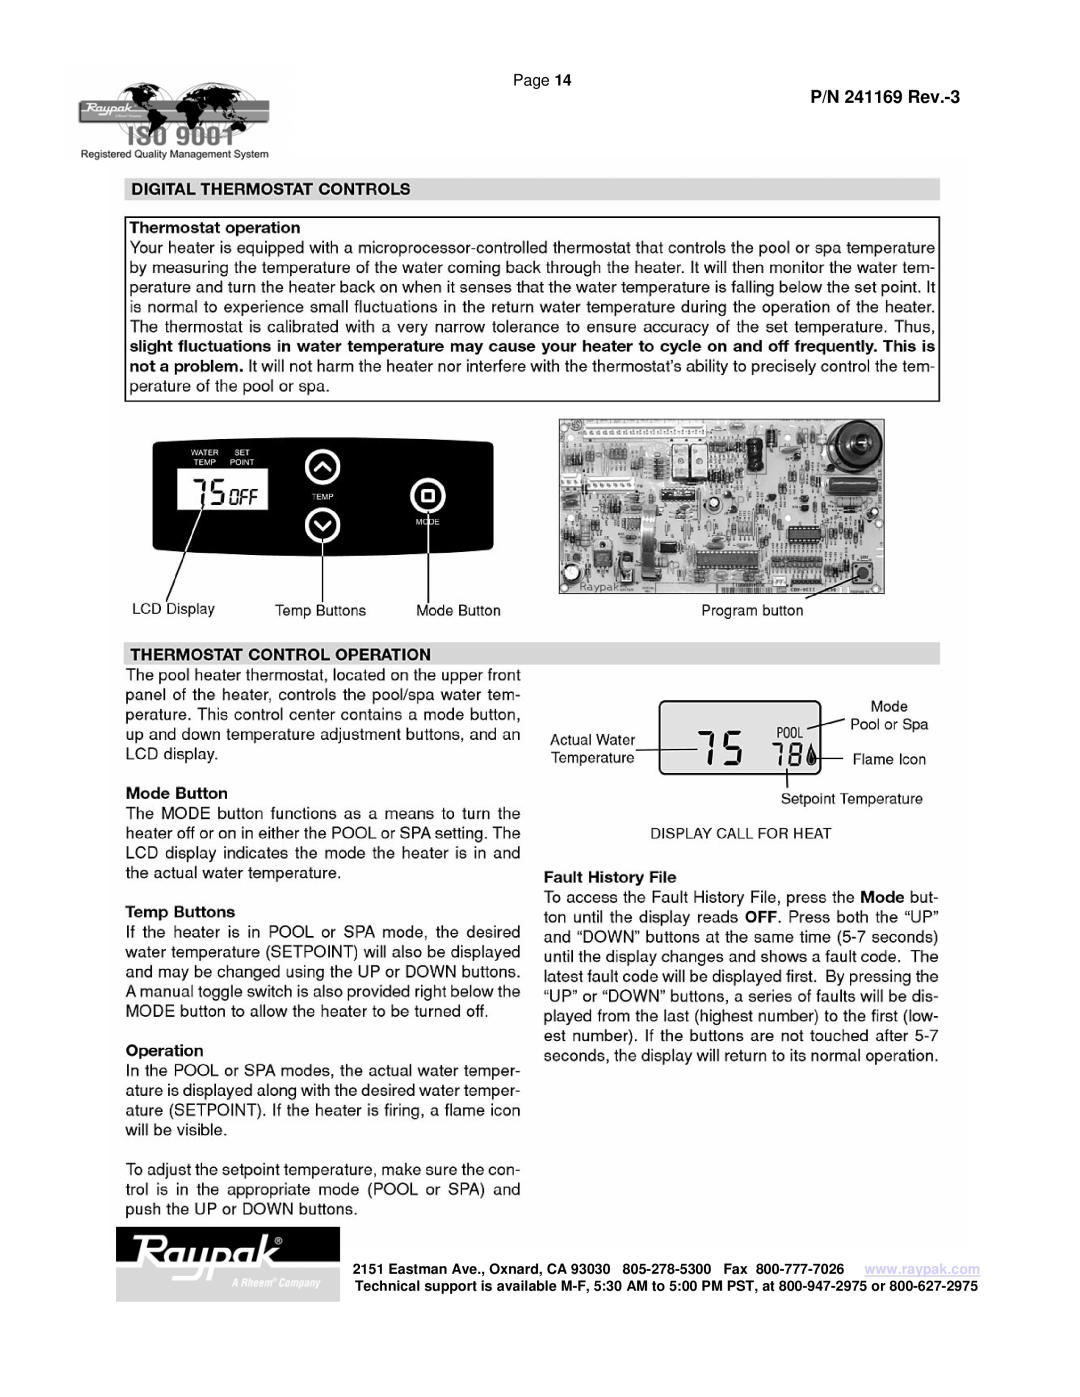 Raypak 185A manual P/N 241169 Rev.-3, Page 